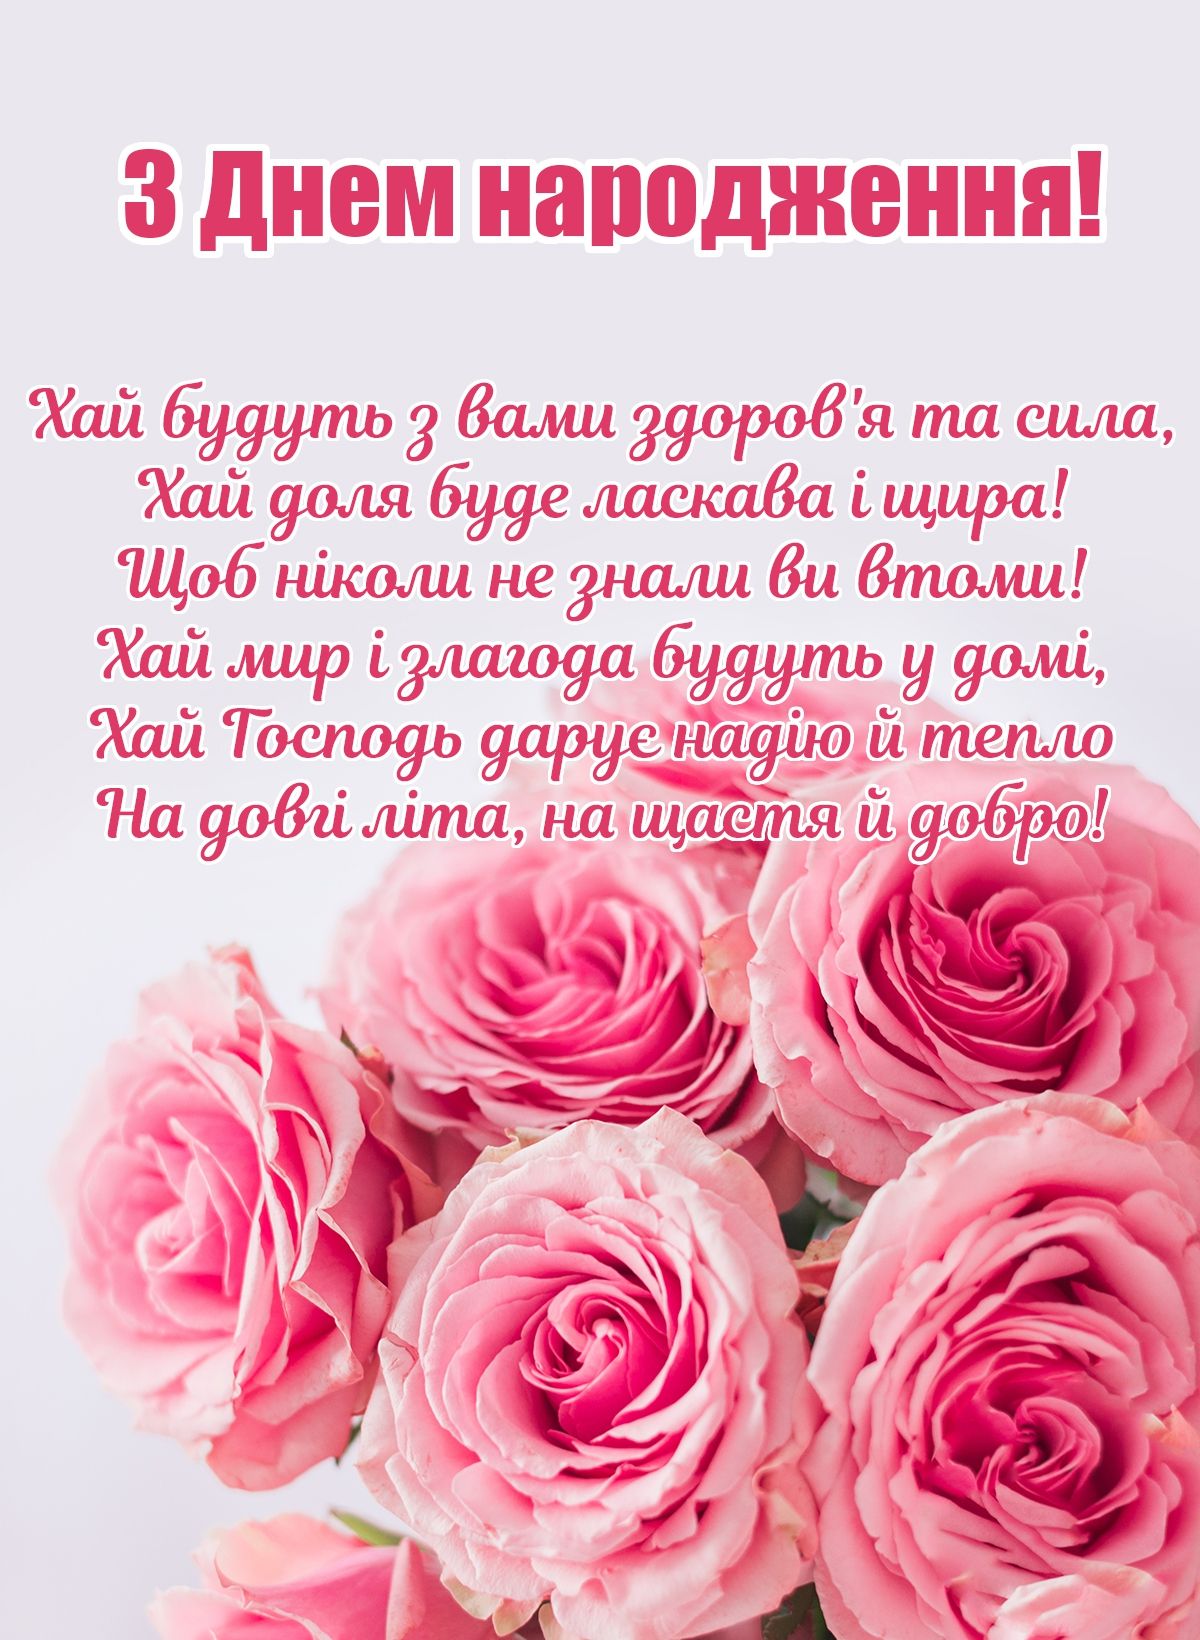 Привітати хрещену з днем народження українською мовою
